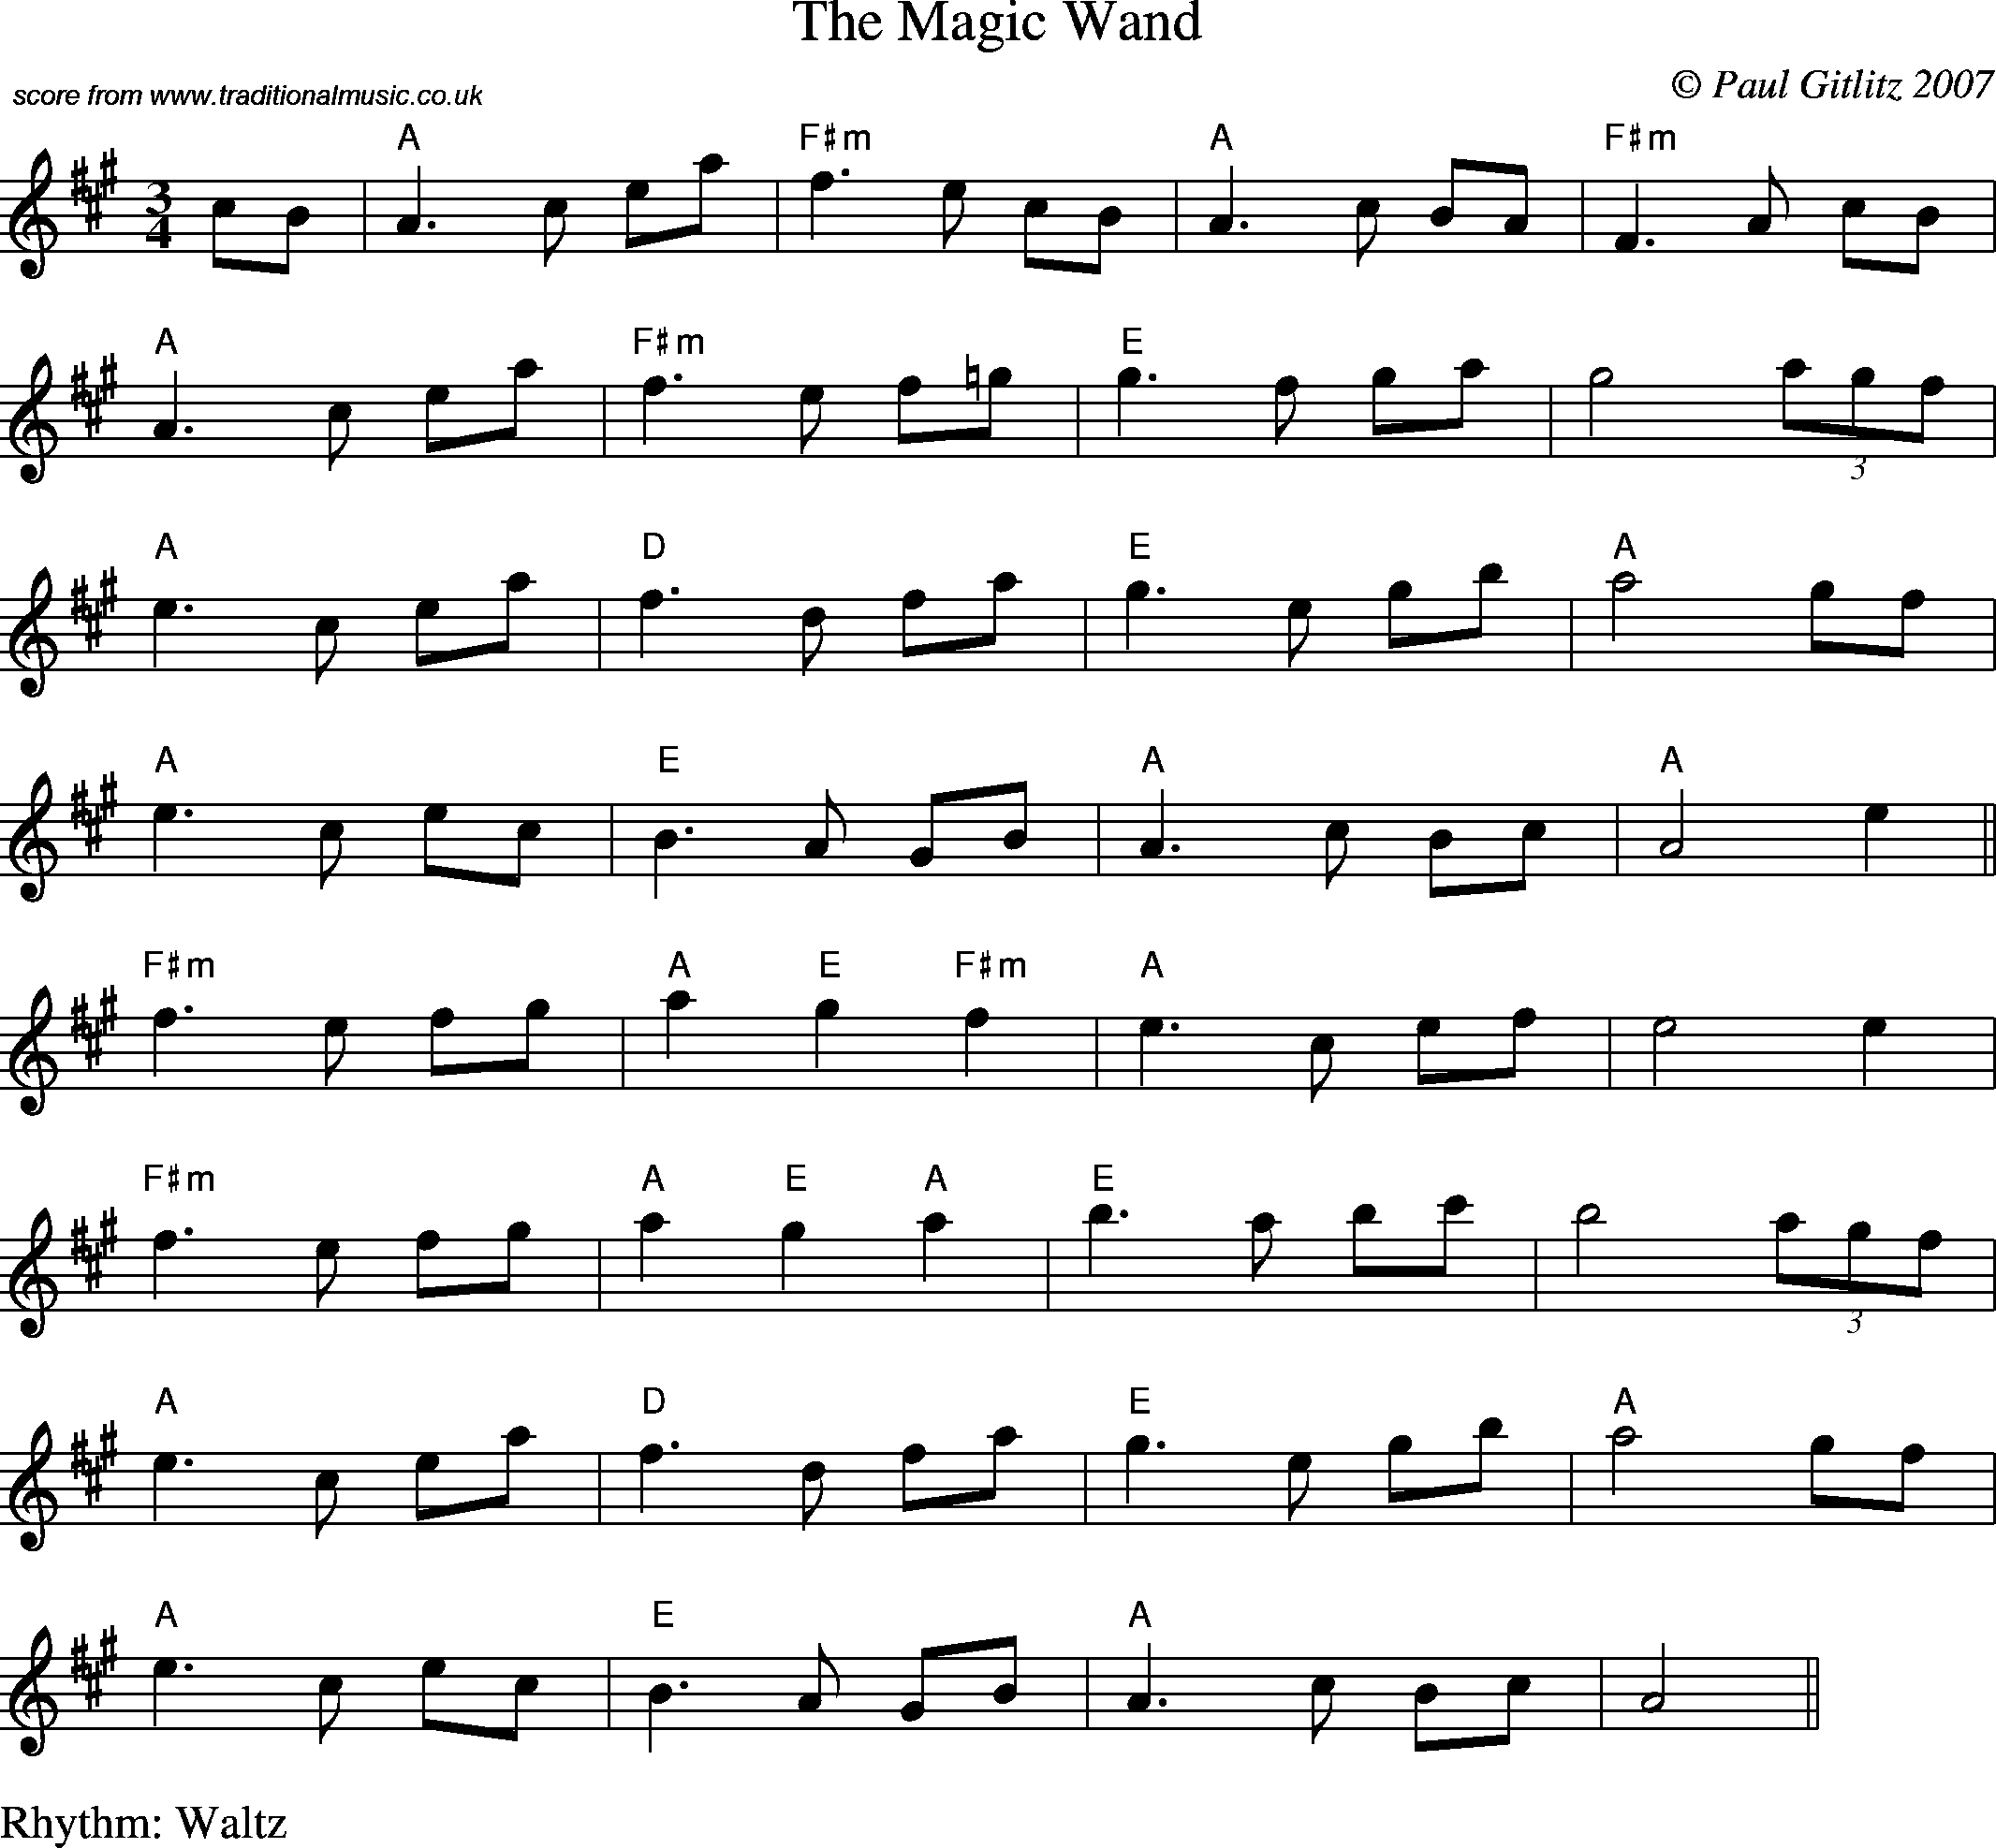 Sheet Music Score for Waltz - The Magic Wand